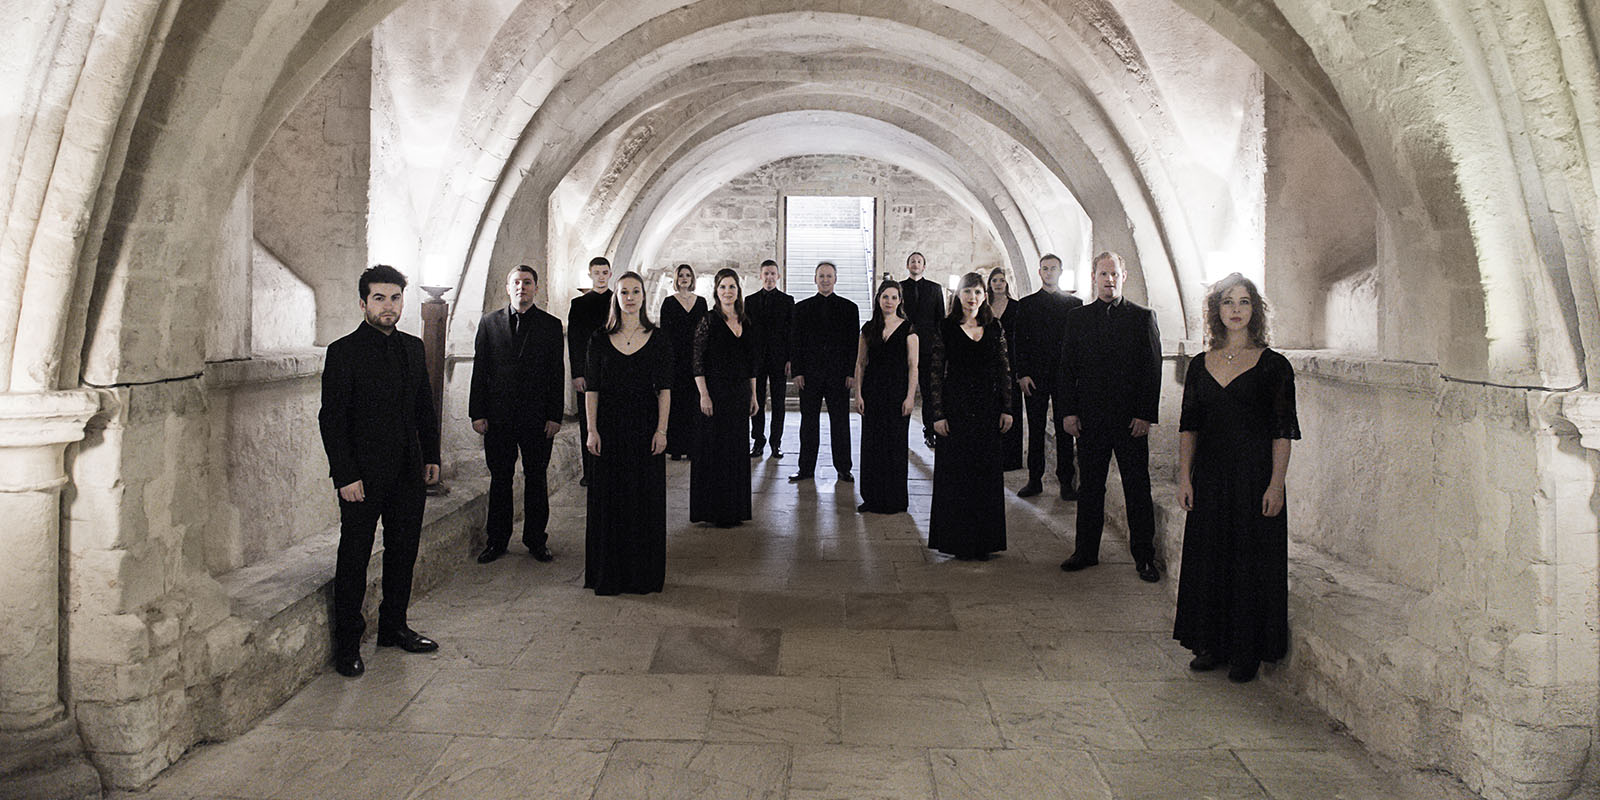 Award-winning British choir Tenebrae coming to Athens